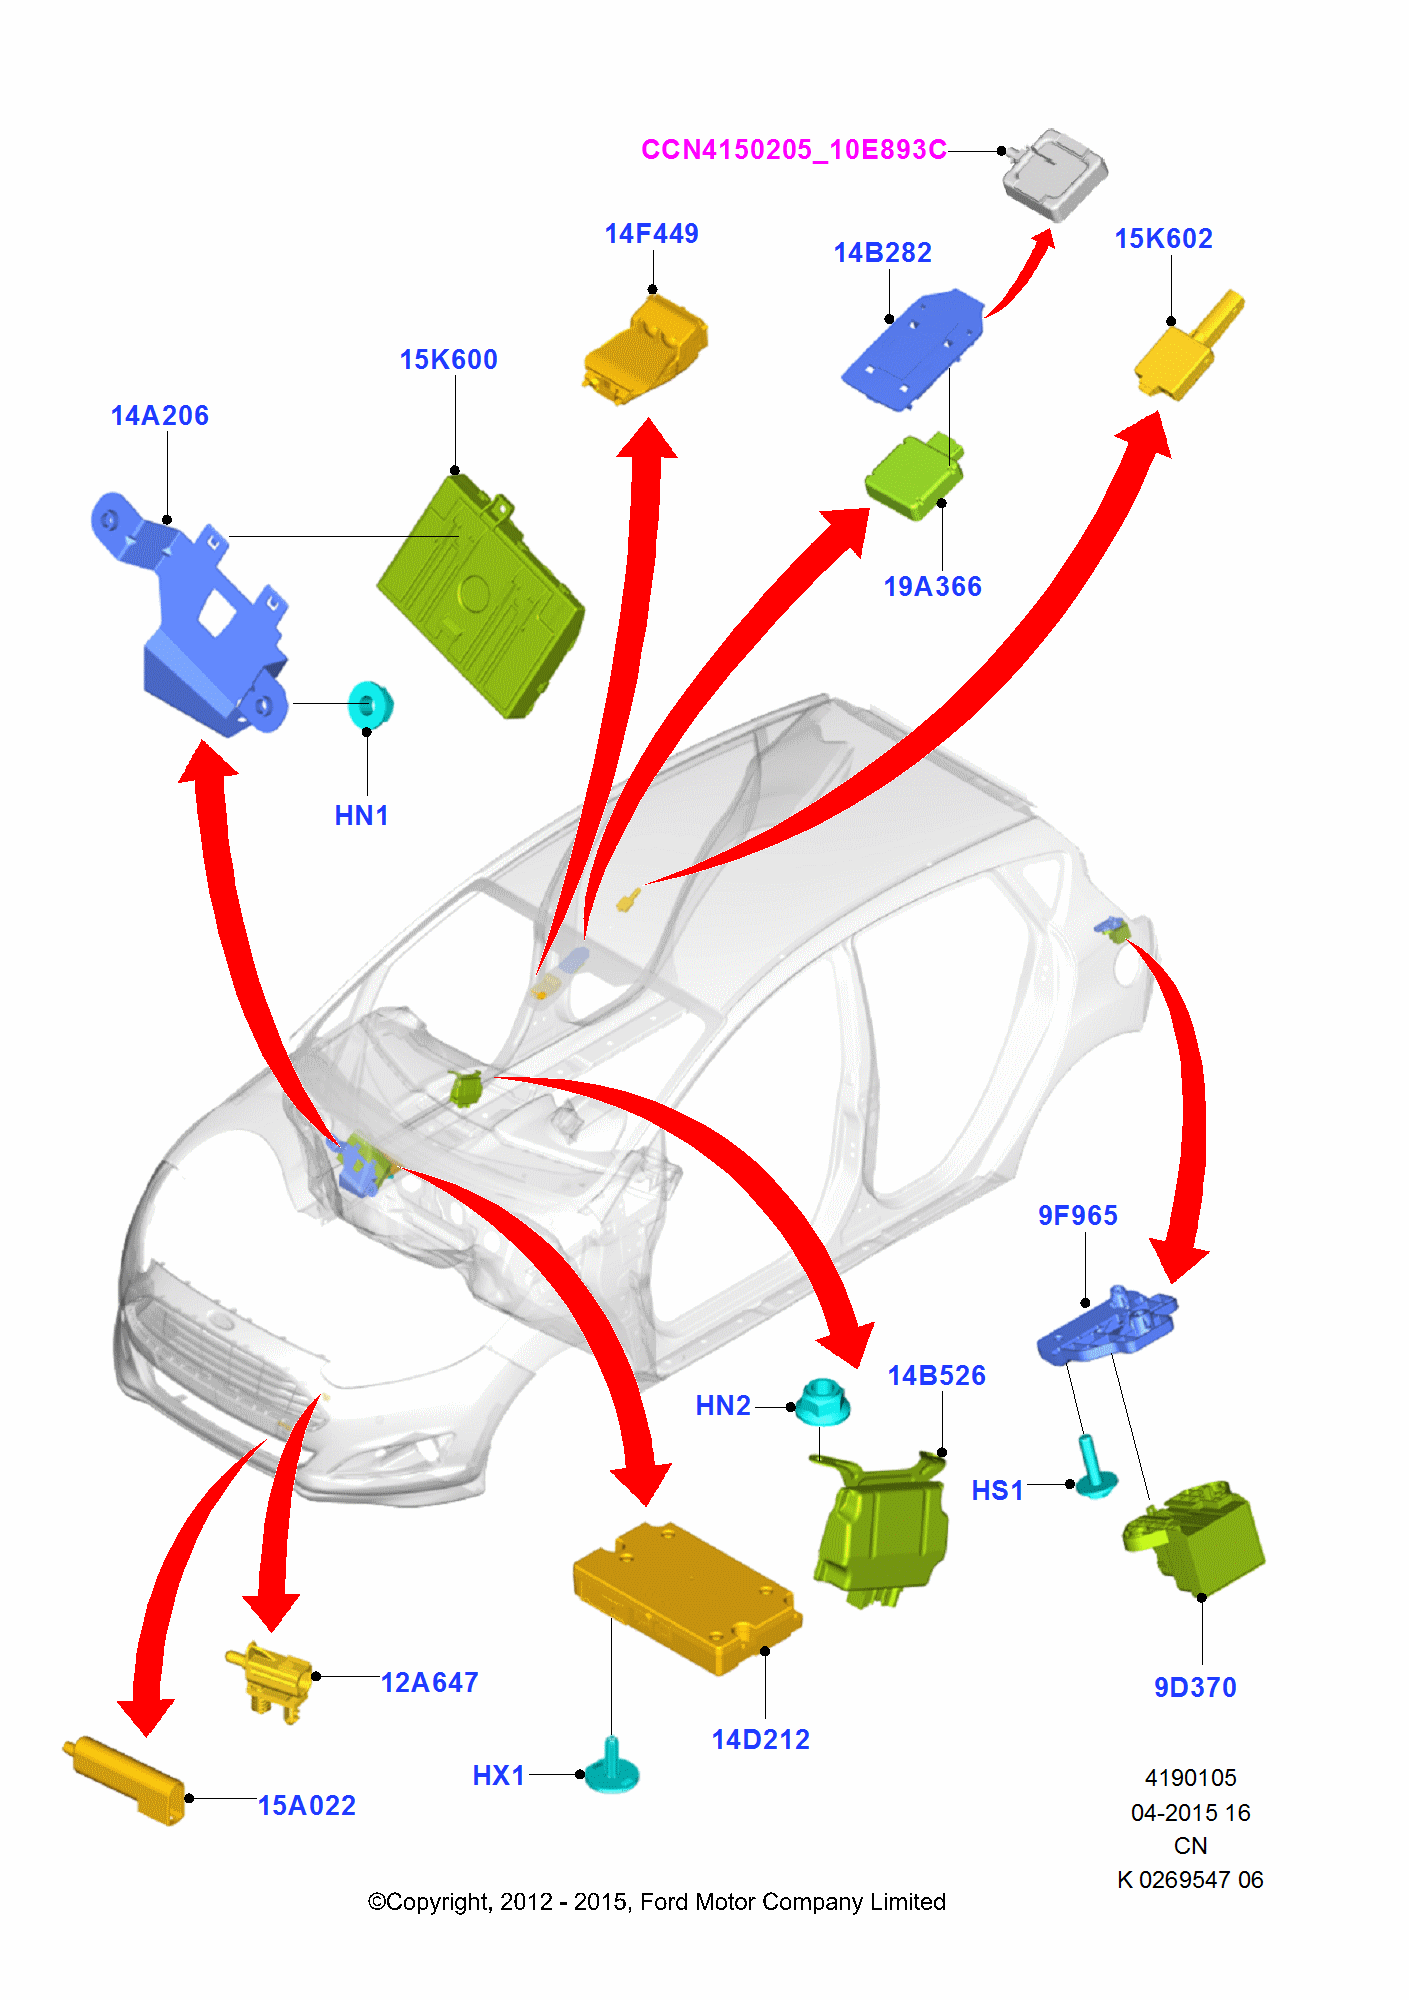 Vehicle Modules And Sensors pentru Ford Fiesta Fiesta 2012-                  (CCN)